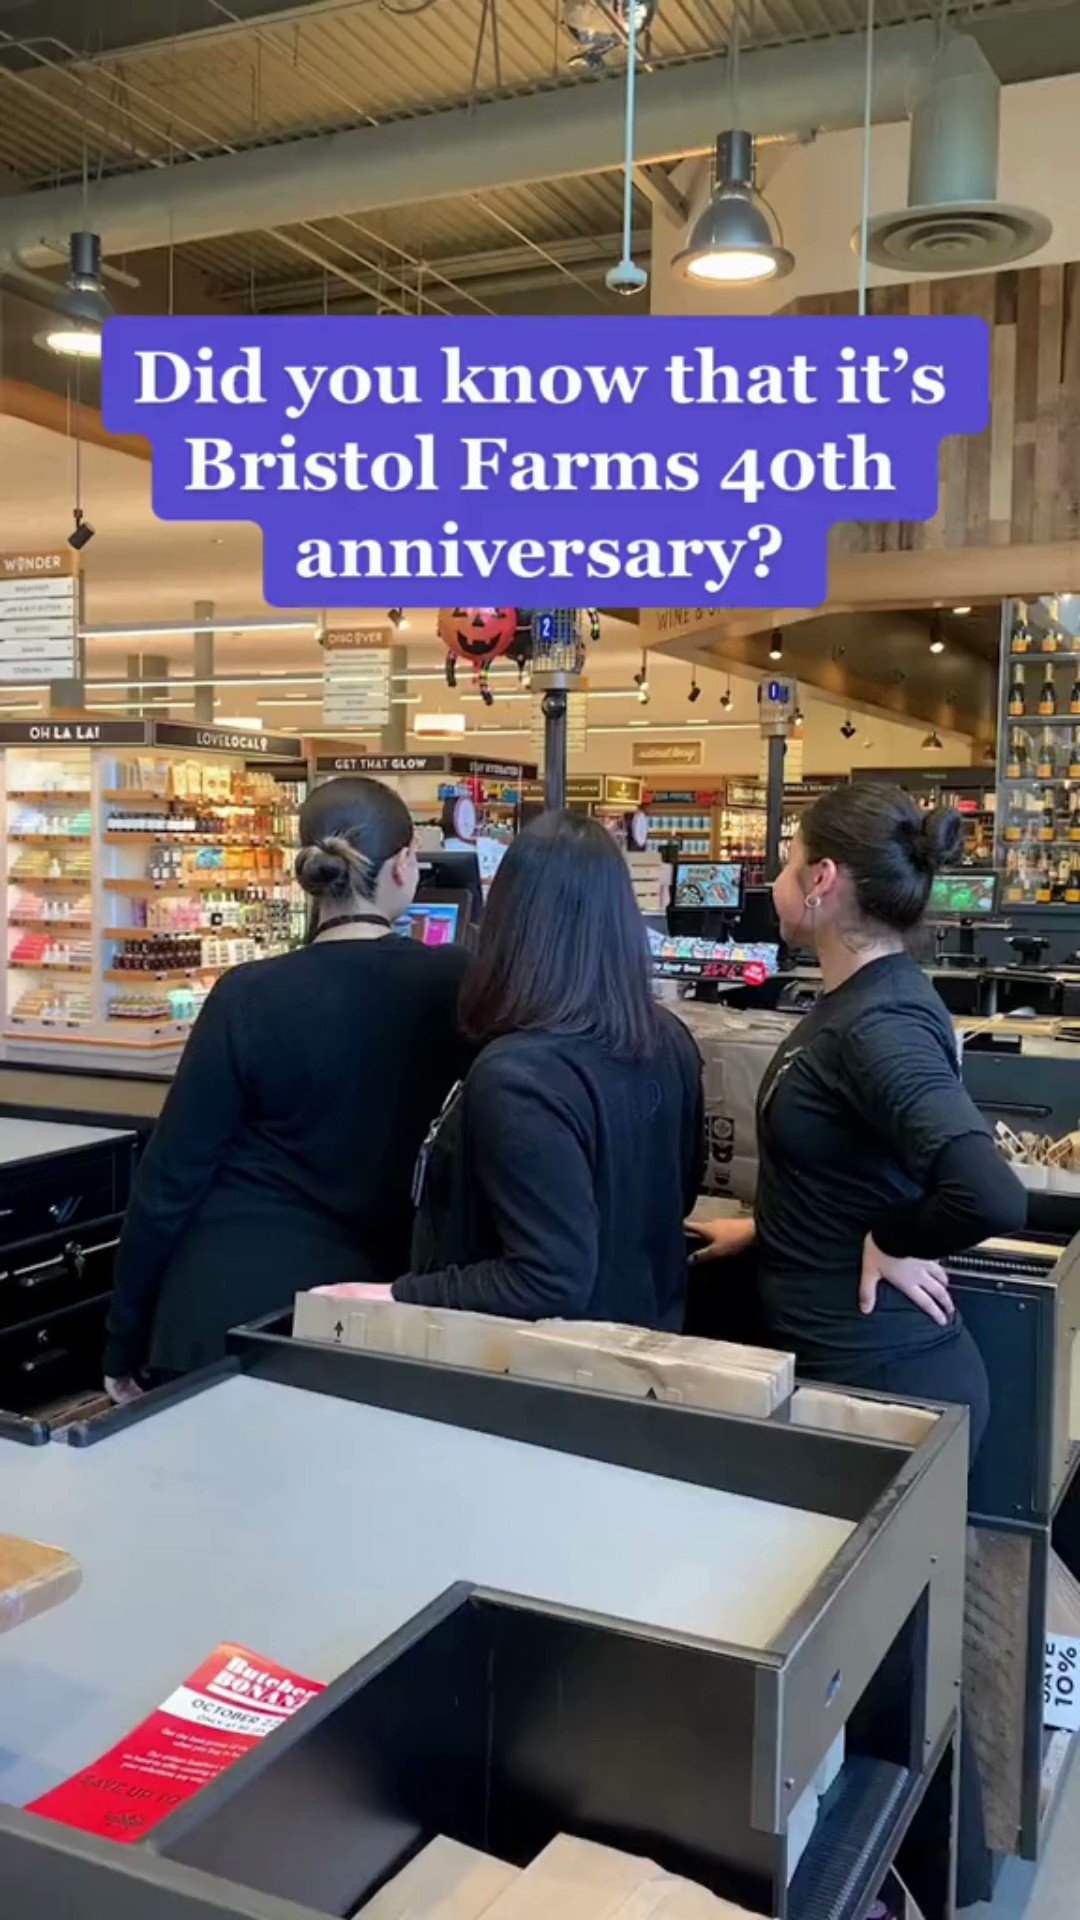 Bristol Farms Opens in Santa Monica